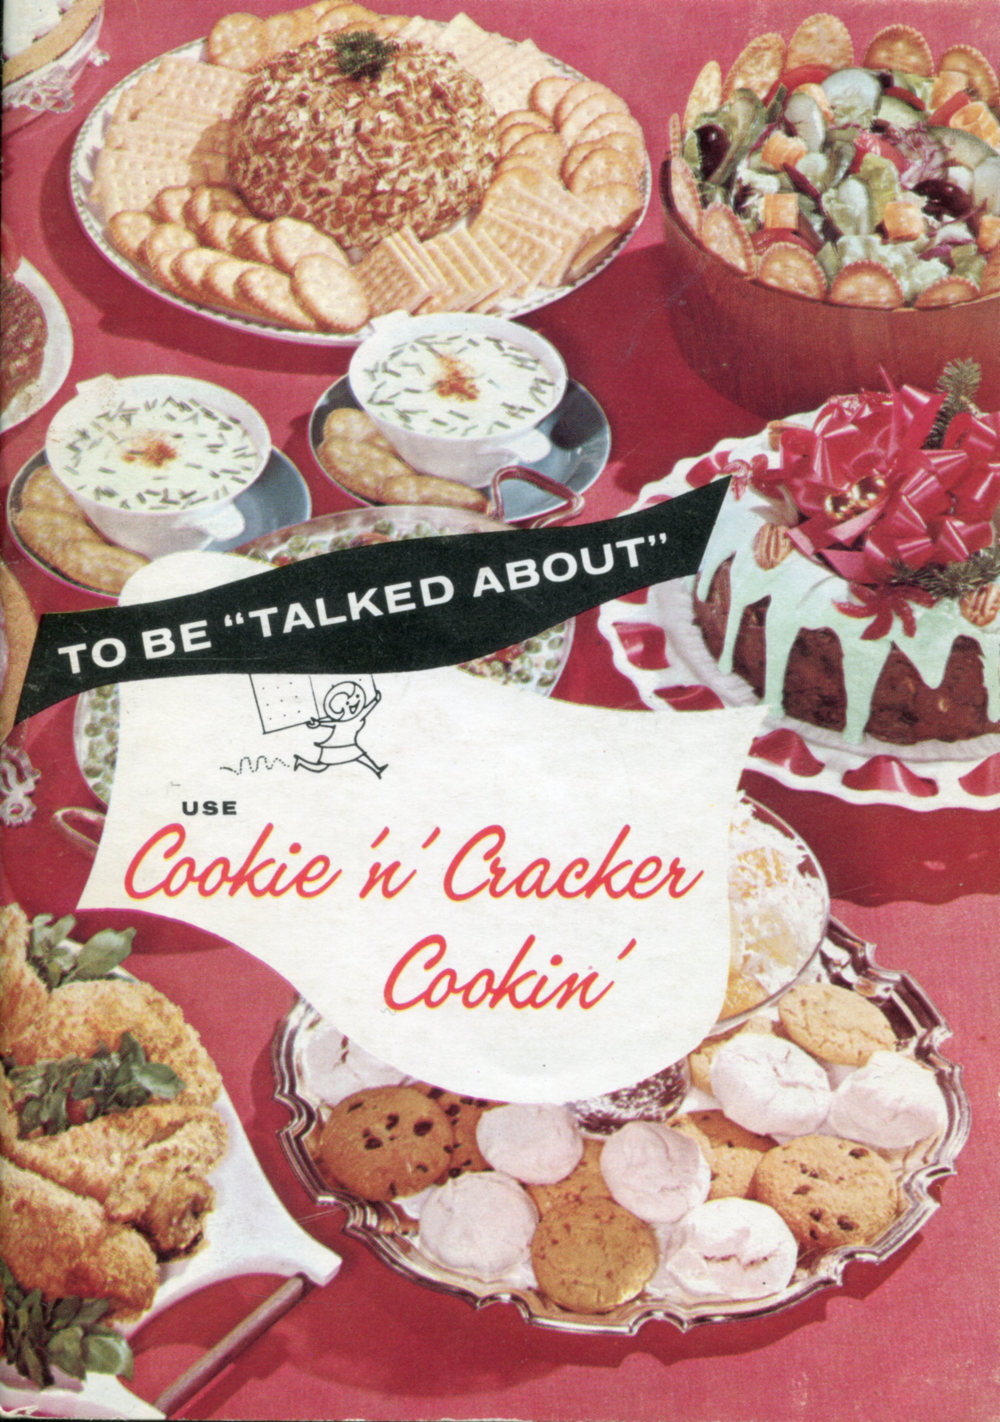 Cookie ’n’ Cracker Cookin’